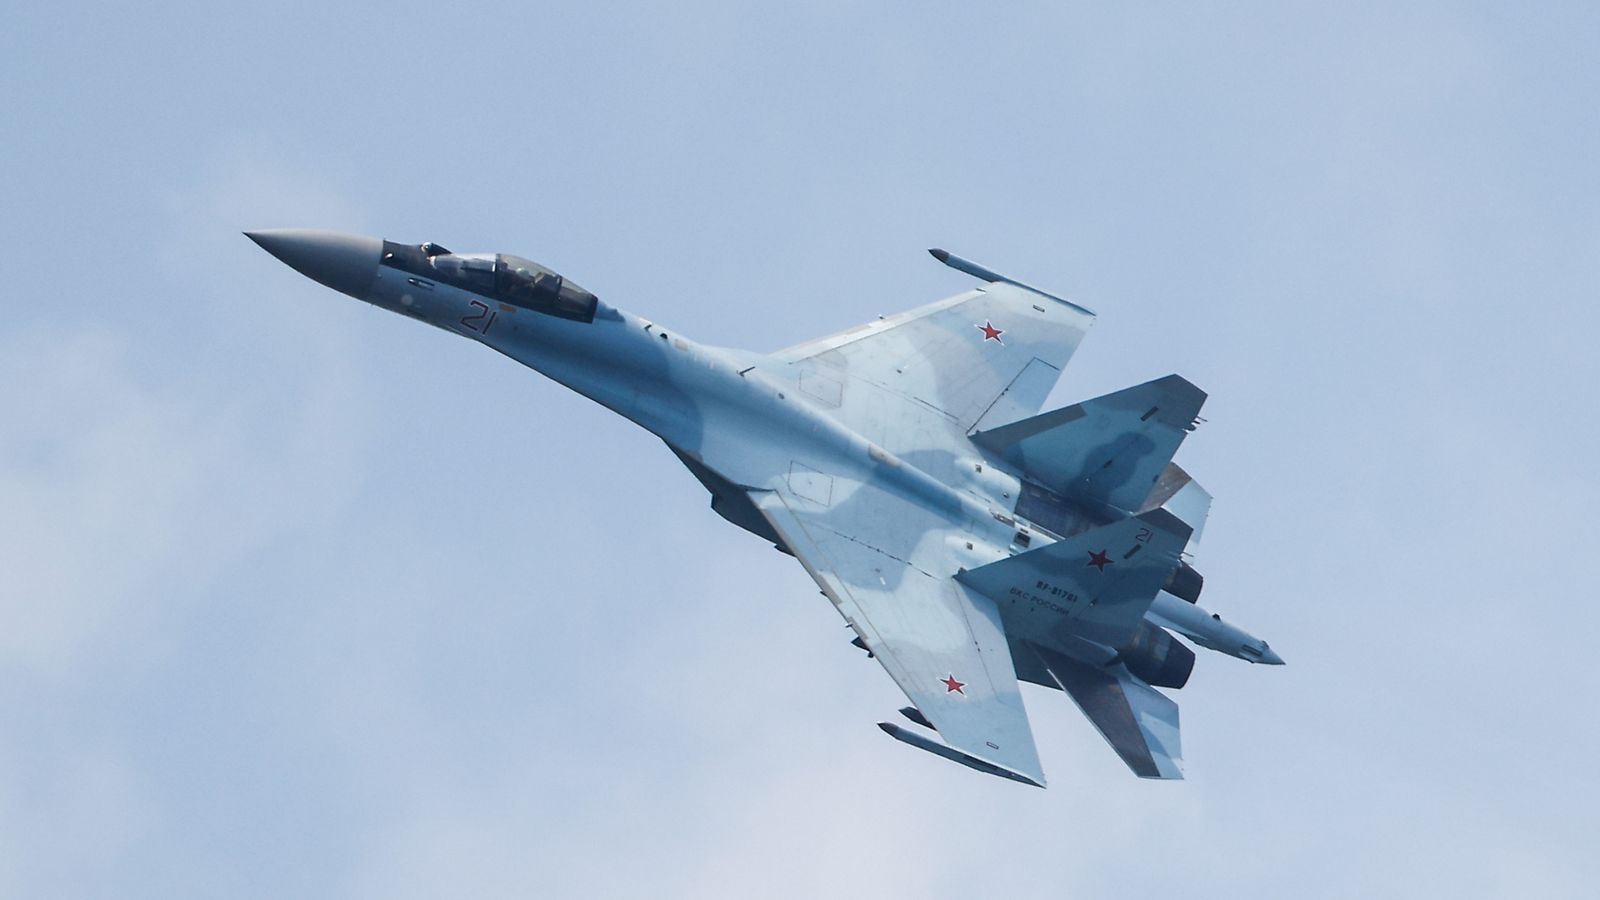 Un avion de chasse russe envoyé pour intercepter deux bombardiers américains survolant la mer Baltique | Actualités internationales